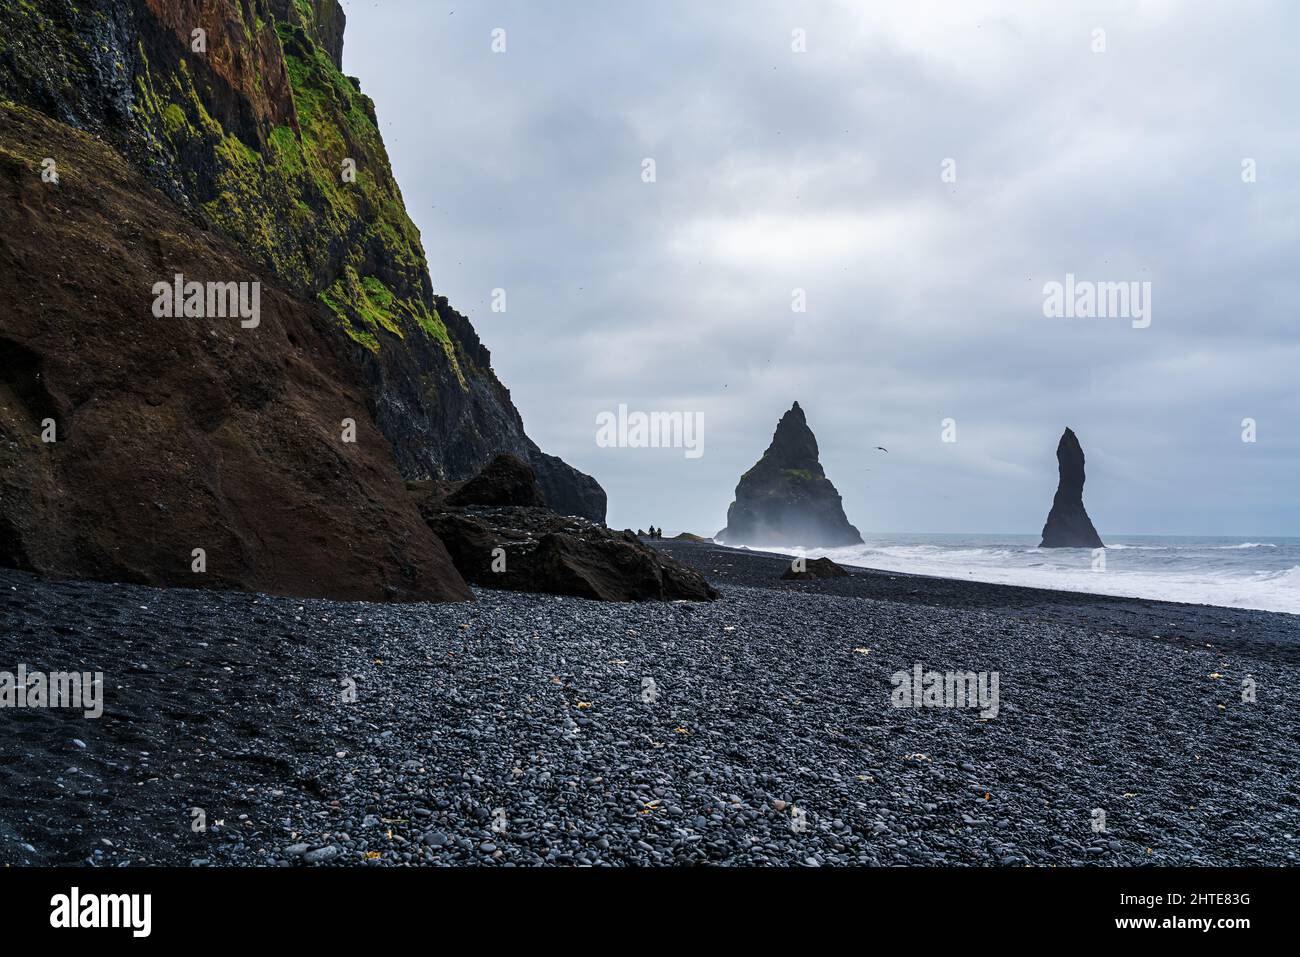 Paesaggio vulcanico della spiaggia di sabbia nera di Reynisfjara al monte Reynisfjall con una coppia a piedi e le onde tempestose dell'Oceano Atlantico. Foto Stock